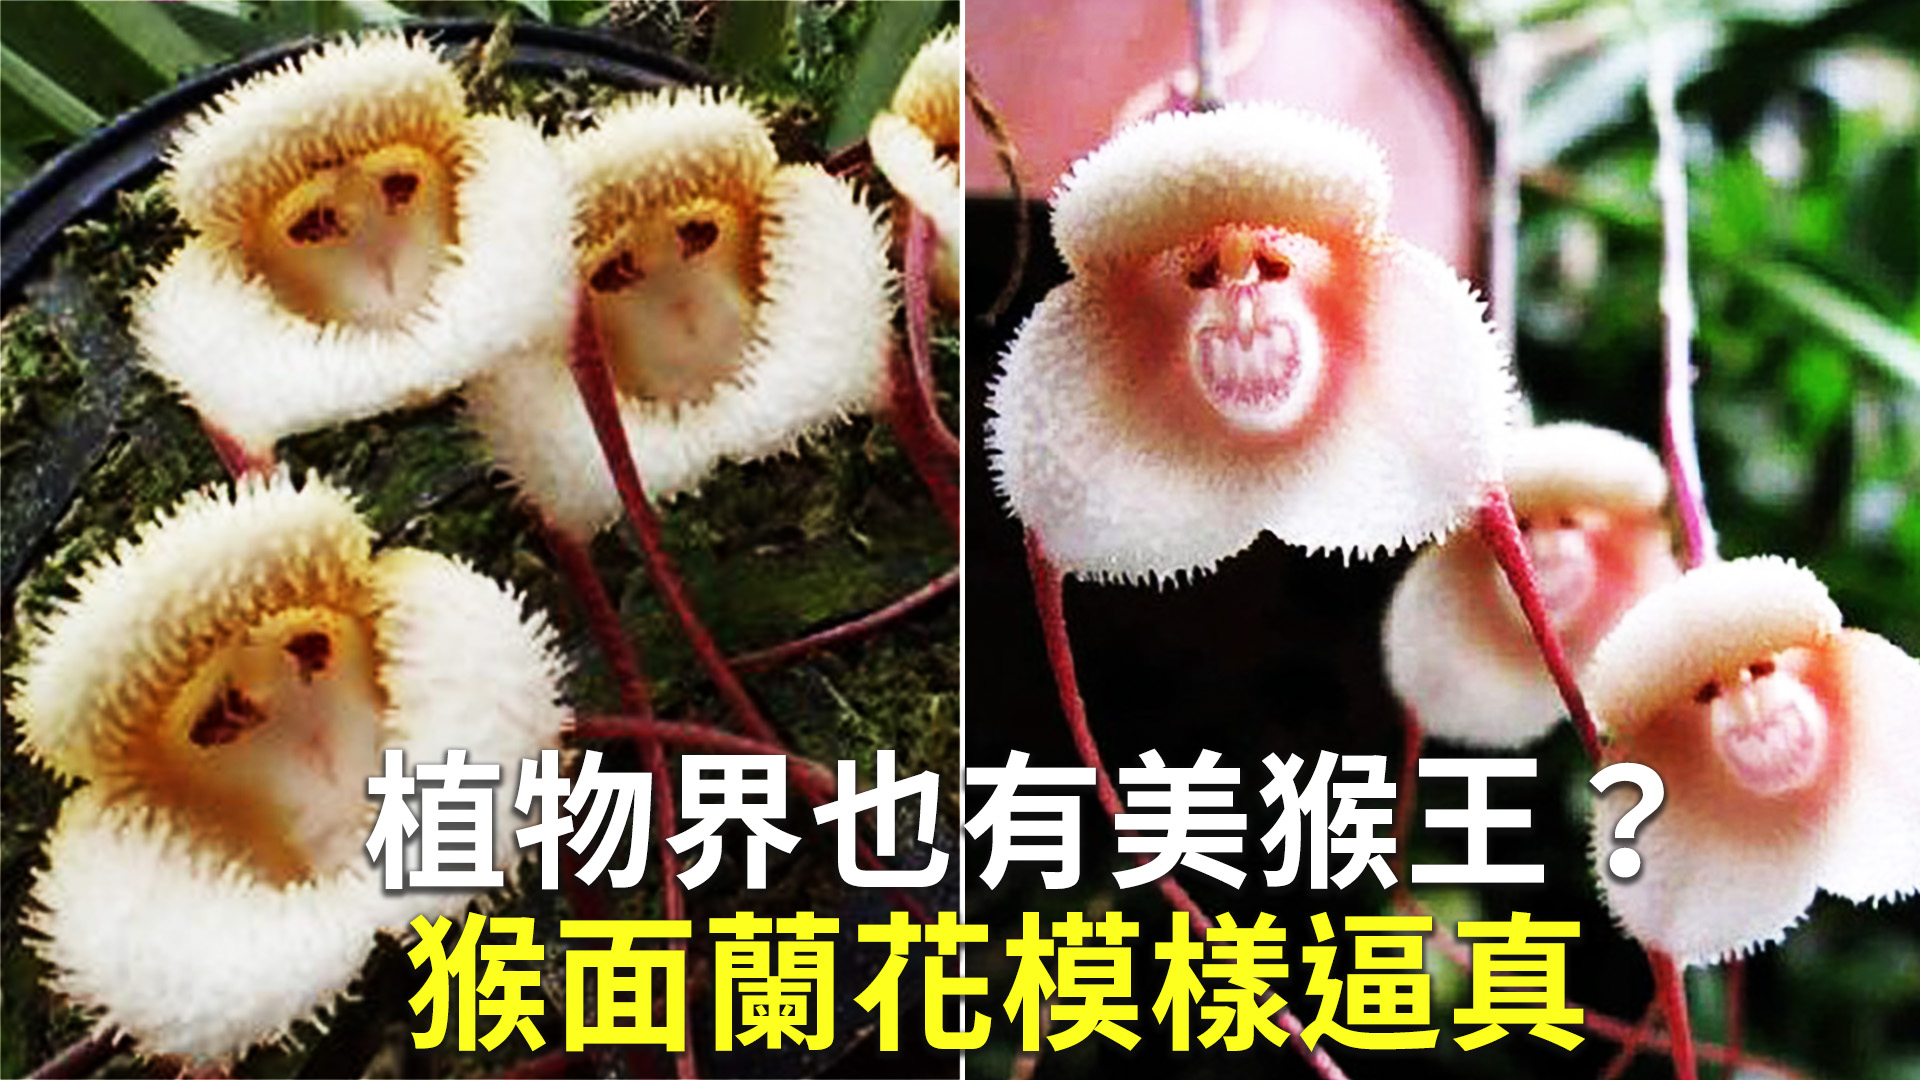 猴面花图片_春季的猴面花图片大全 - 花卉网 花卉网 - 花卉网，花儿成长的地方